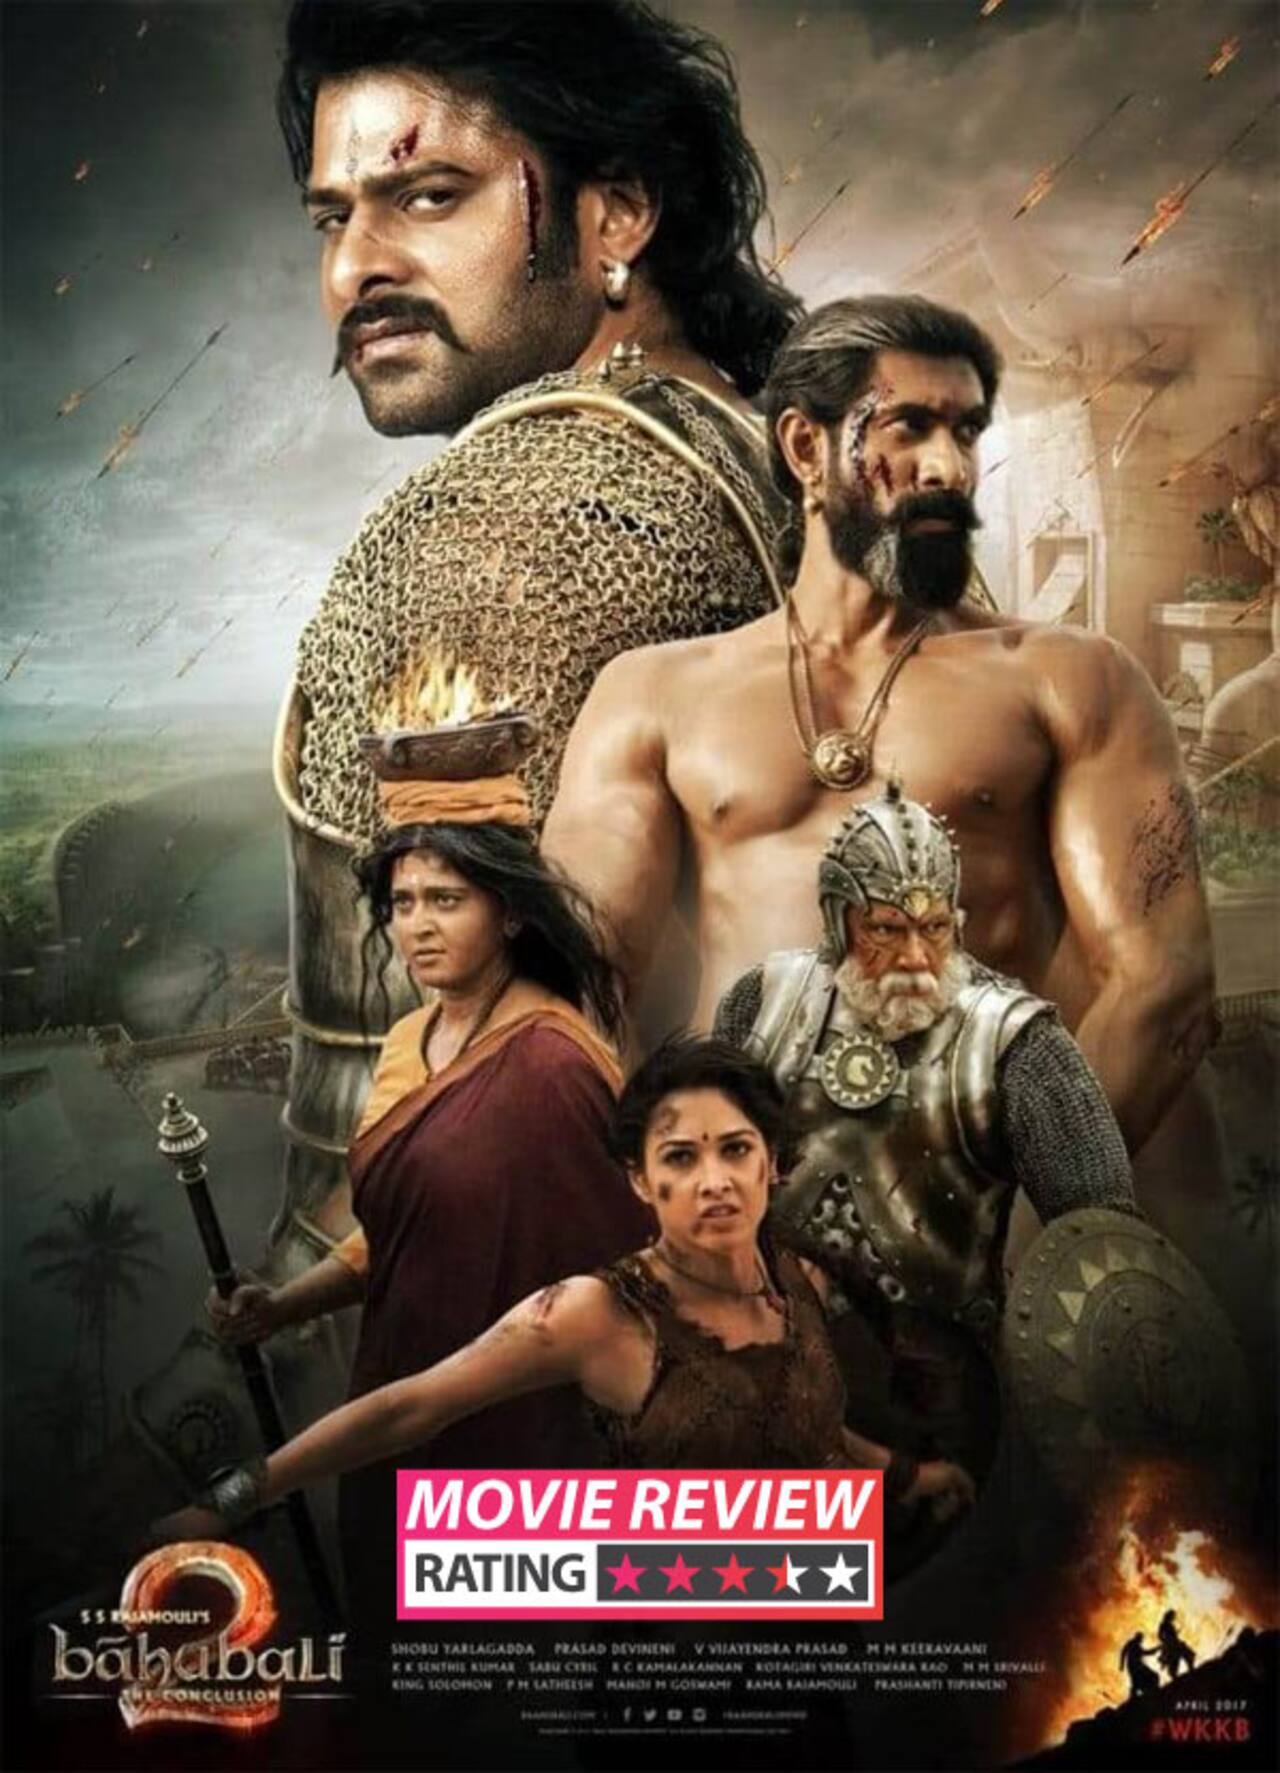 bahubali 2 movie review in telugu